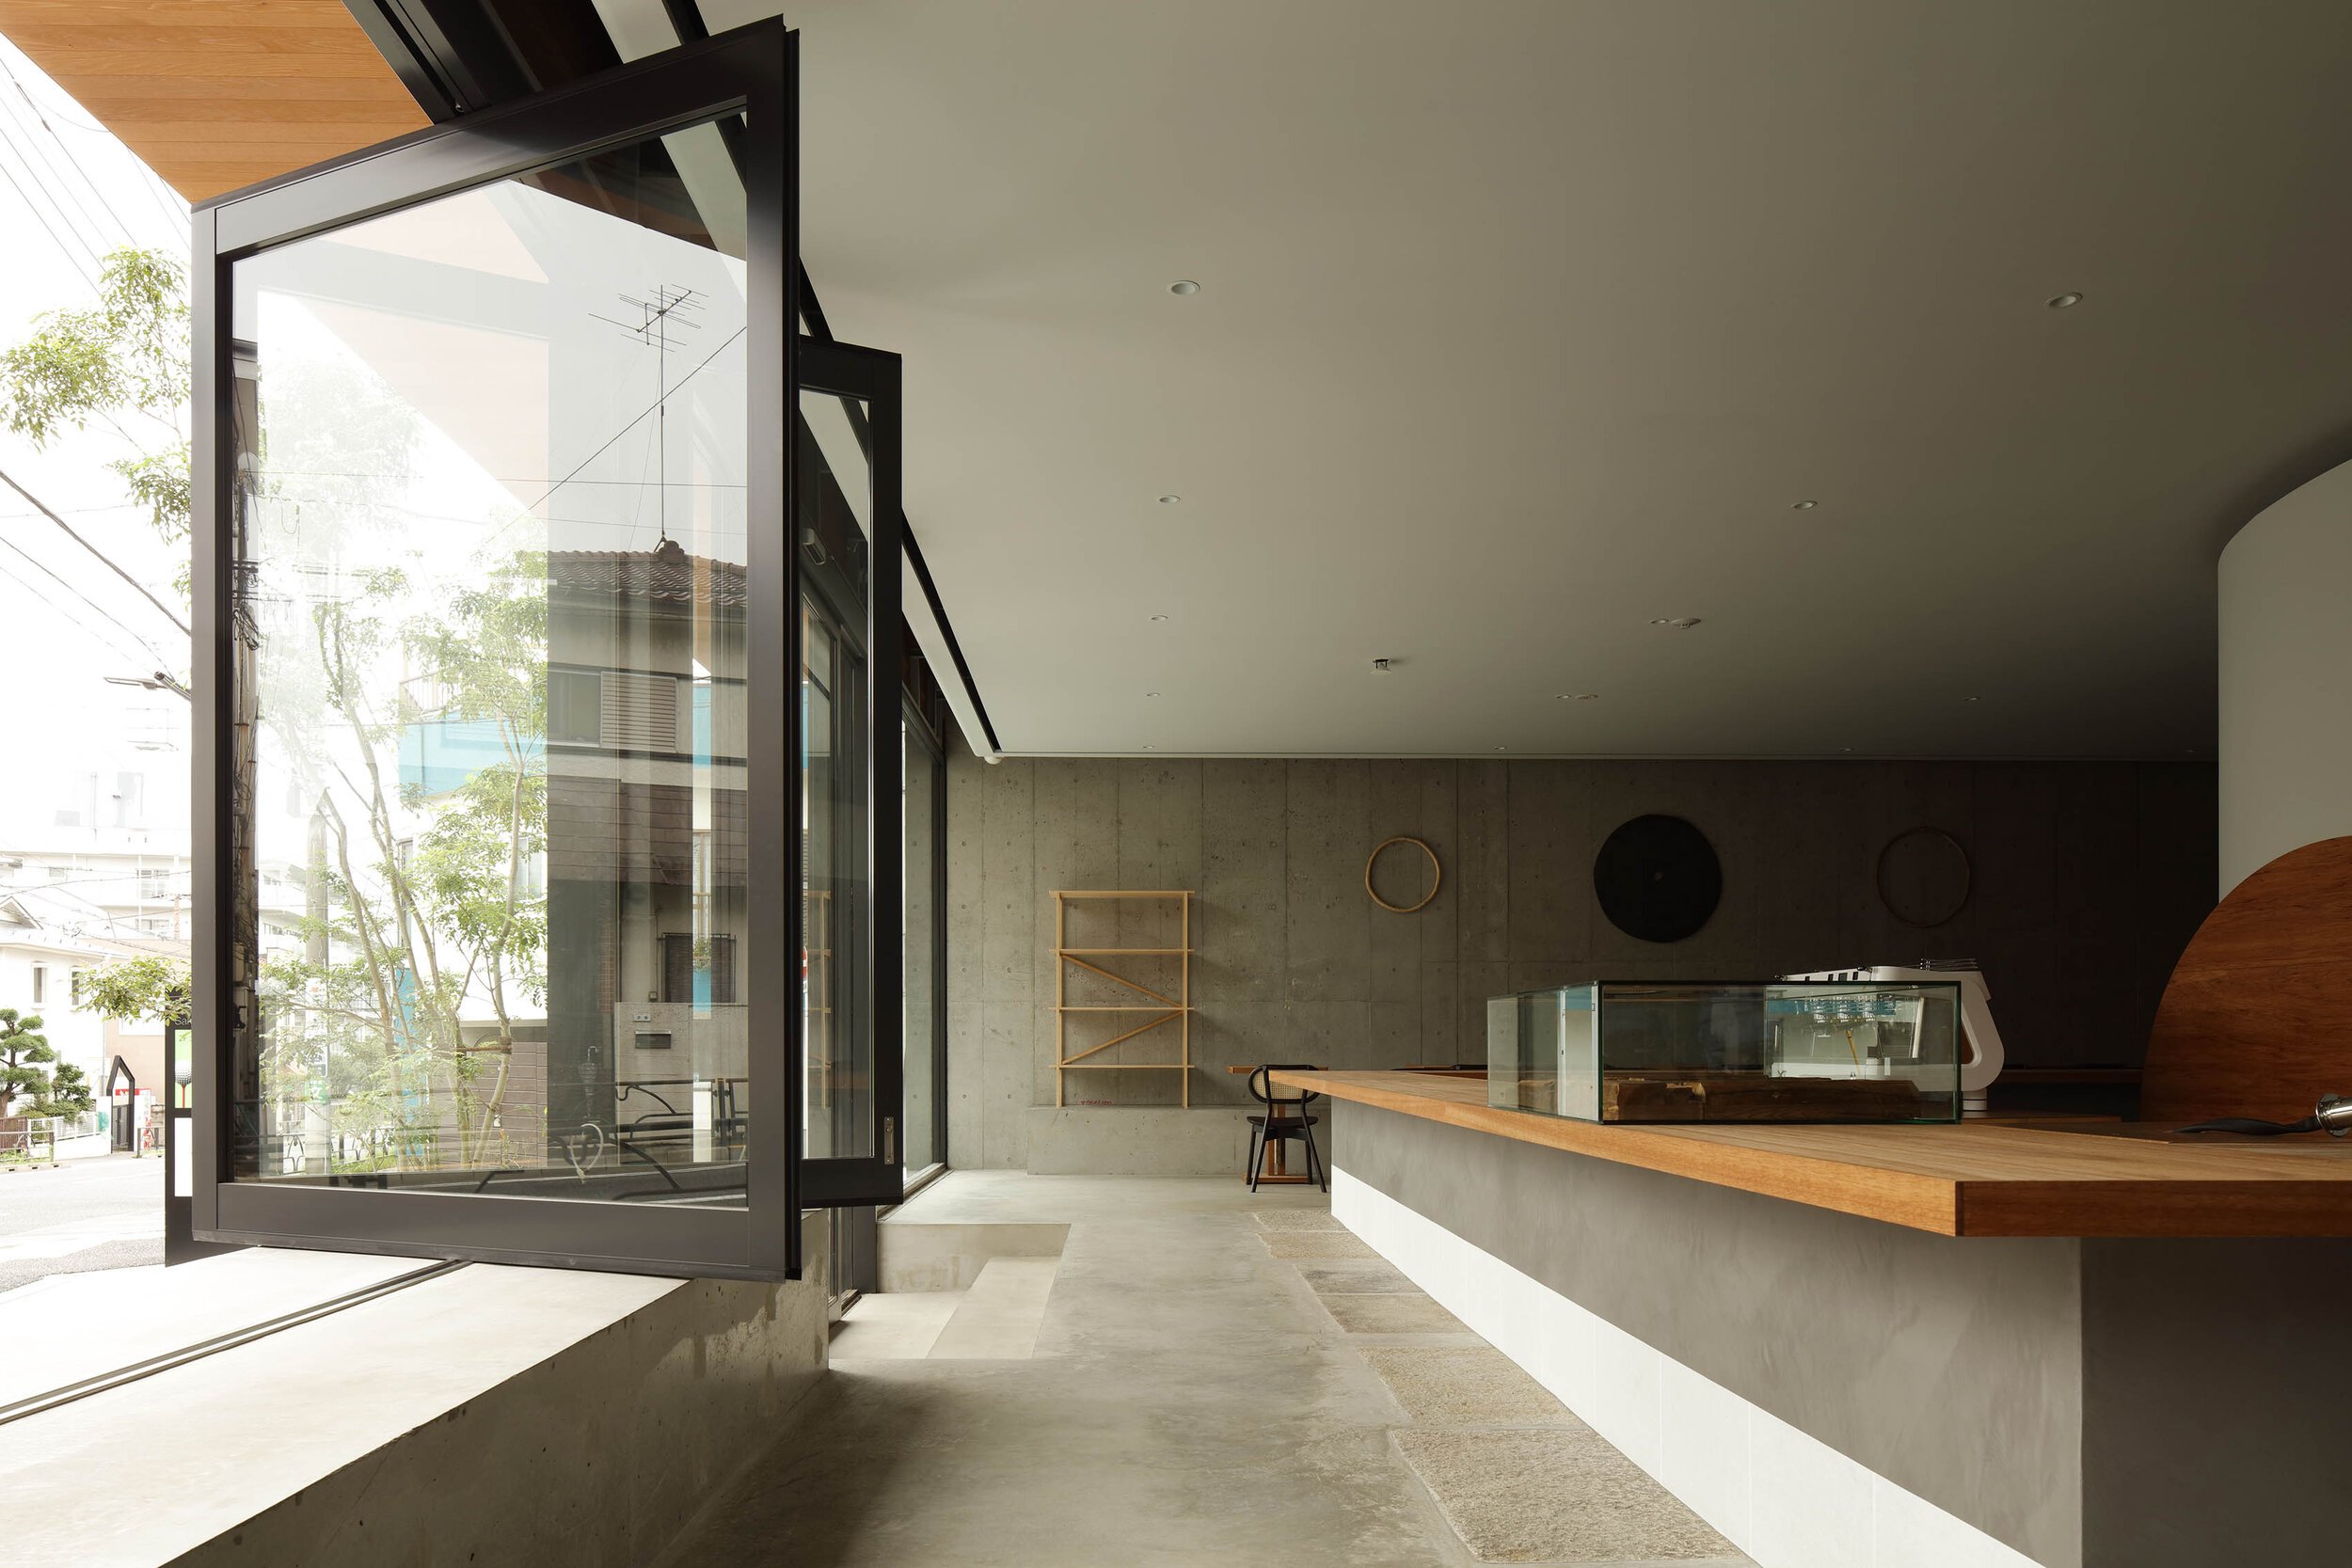  Yusuke Seki Studioの関祐介がデザインしたカフェOgawa Coffee Laboratory。全面開放できるガラス扉 